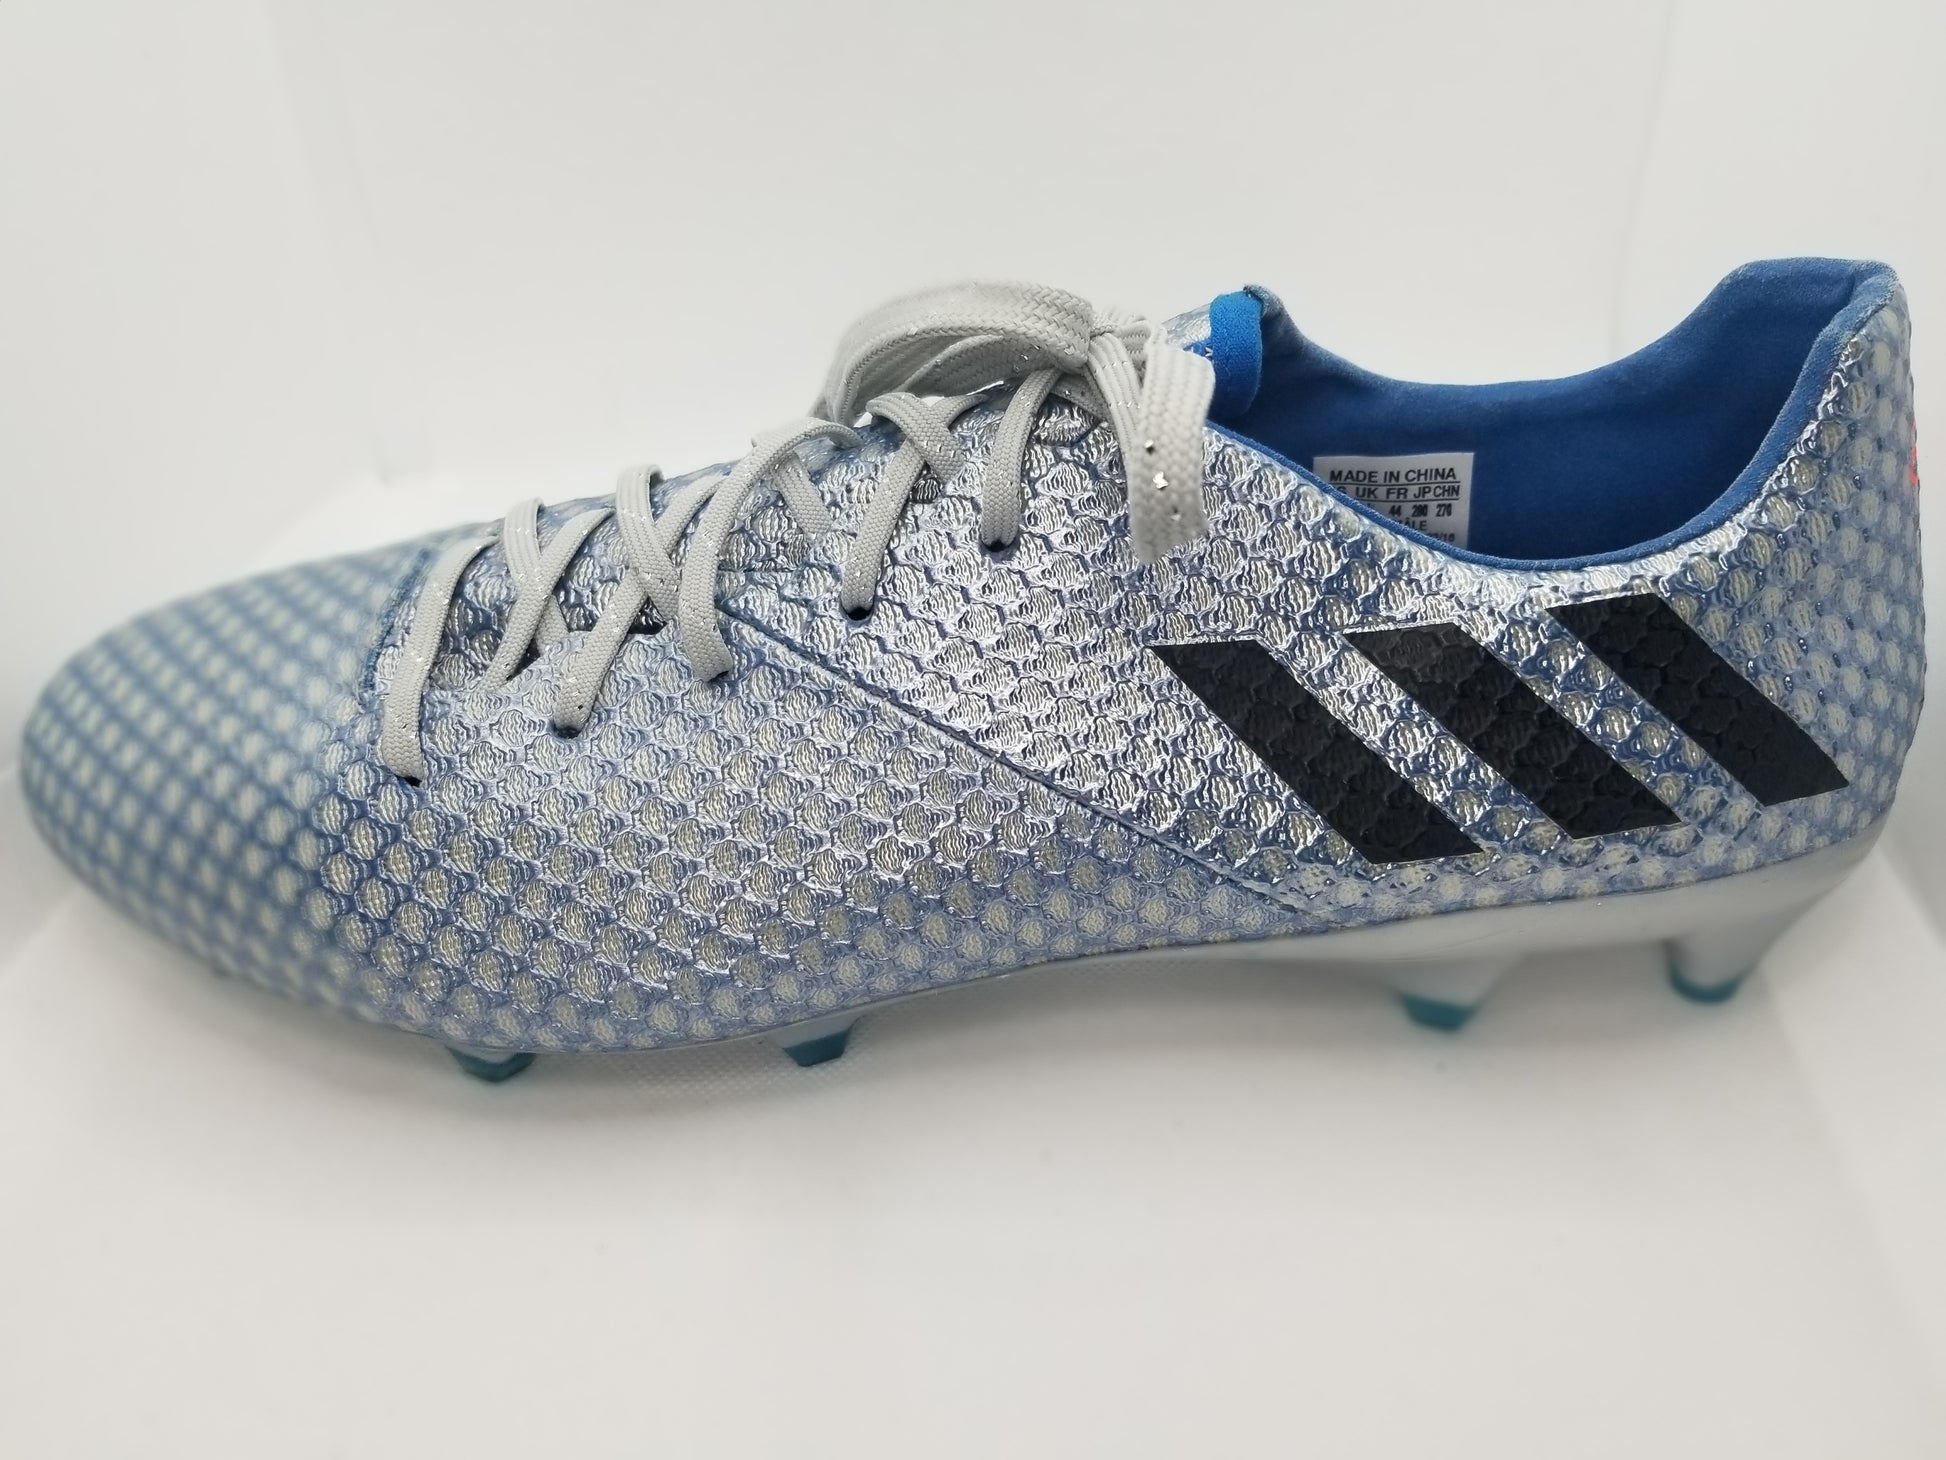 Adidas Messi 16.1 – Nyong Boots